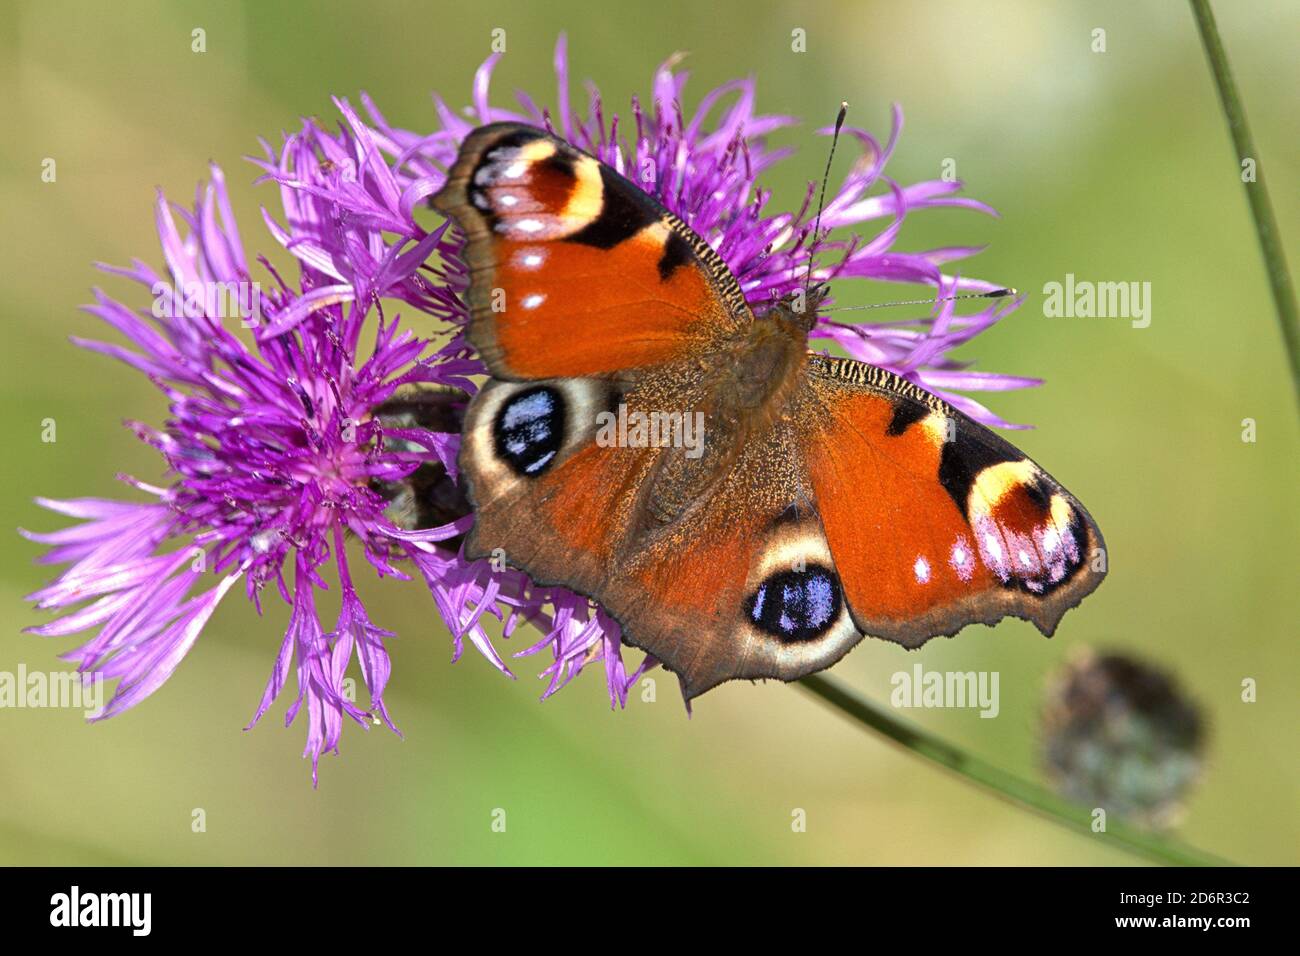 Schleswig, Allemagne. 17 octobre 2020. 10/17/2020, Schleswig, un paon papillon (Aglais io) sur un pré knapweed (Centaurea jacea) lors d'une journée d'automne ensoleillée. Le beau papillon ne peut plus trouver que beaucoup de fleurs à cette époque de l'année. Classe: Insectes (Insecta), ordre: Papillons (Lepidoptera), famille: Edelfalter (Nymphalidae), sous-famille: Papillon tacheté (Nymphalidae), genre: Aglais, essence: Papillon Peacock | usage dans le monde crédit: dpa/Alay Live News Banque D'Images